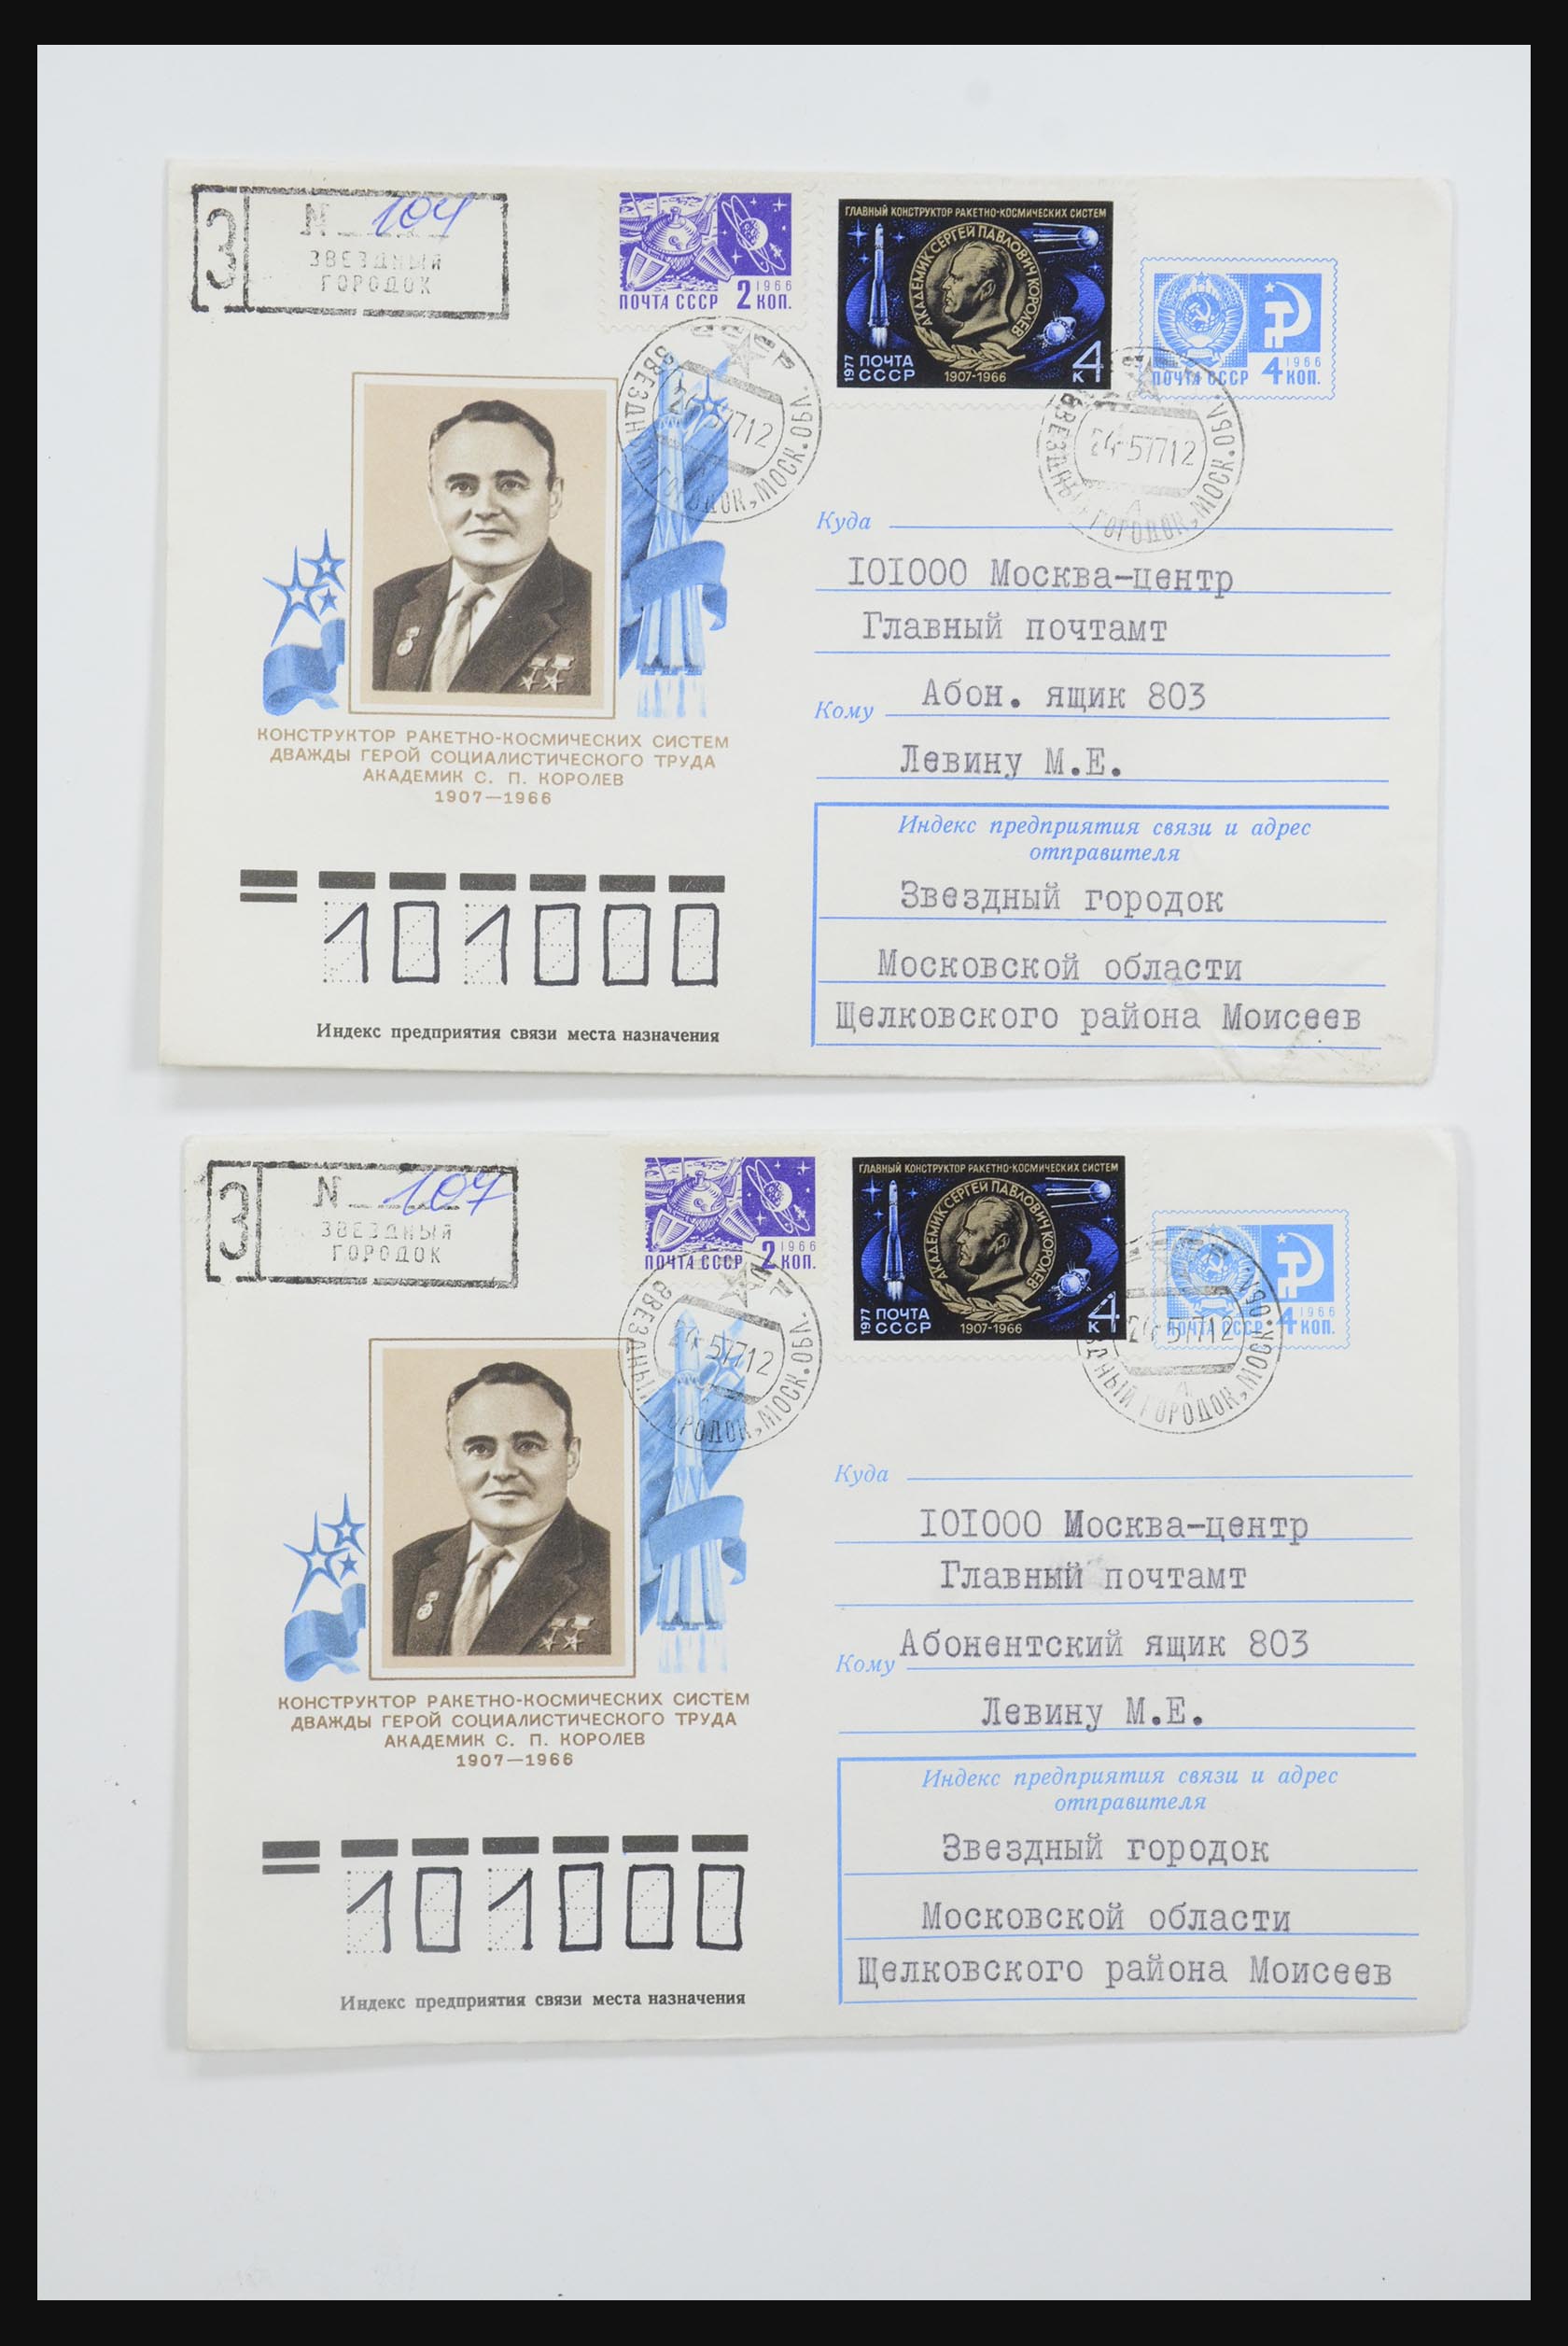 31605 0016 - 31605 Rusland postwaardestukken jaren 50-60.